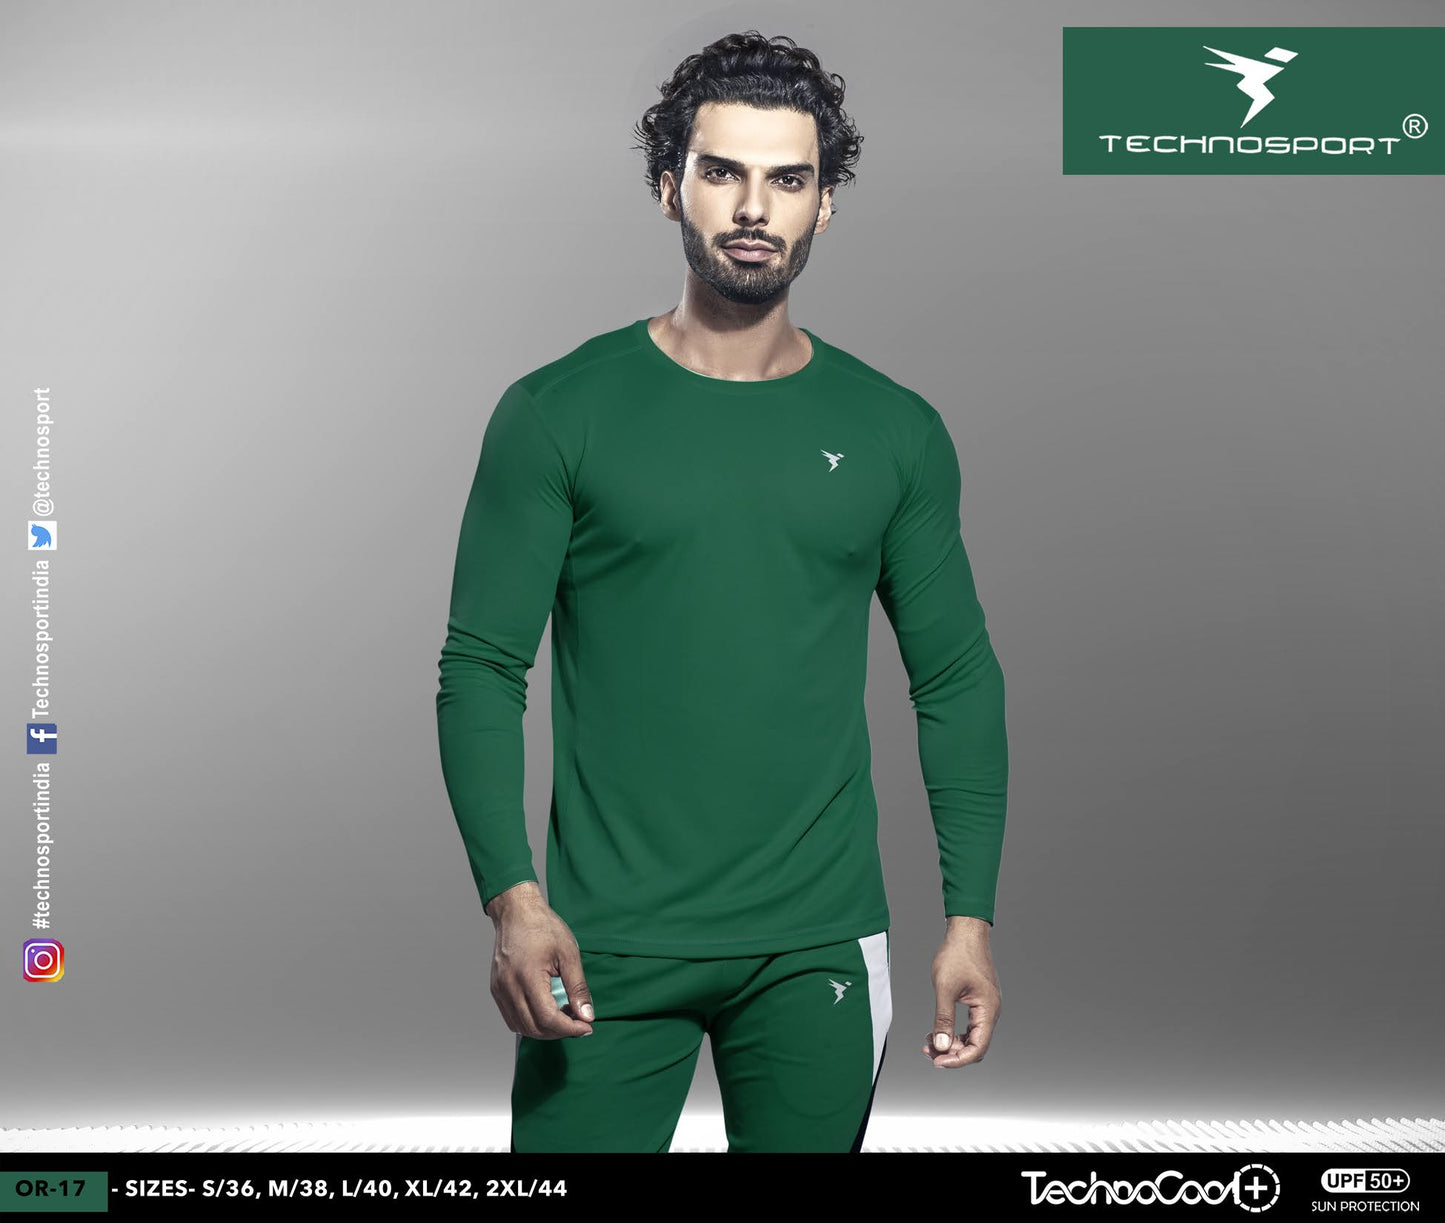 TechnoSport Crew Neck Full Sleeve Dry Fit T Shirt for Men OR-17 (Green)